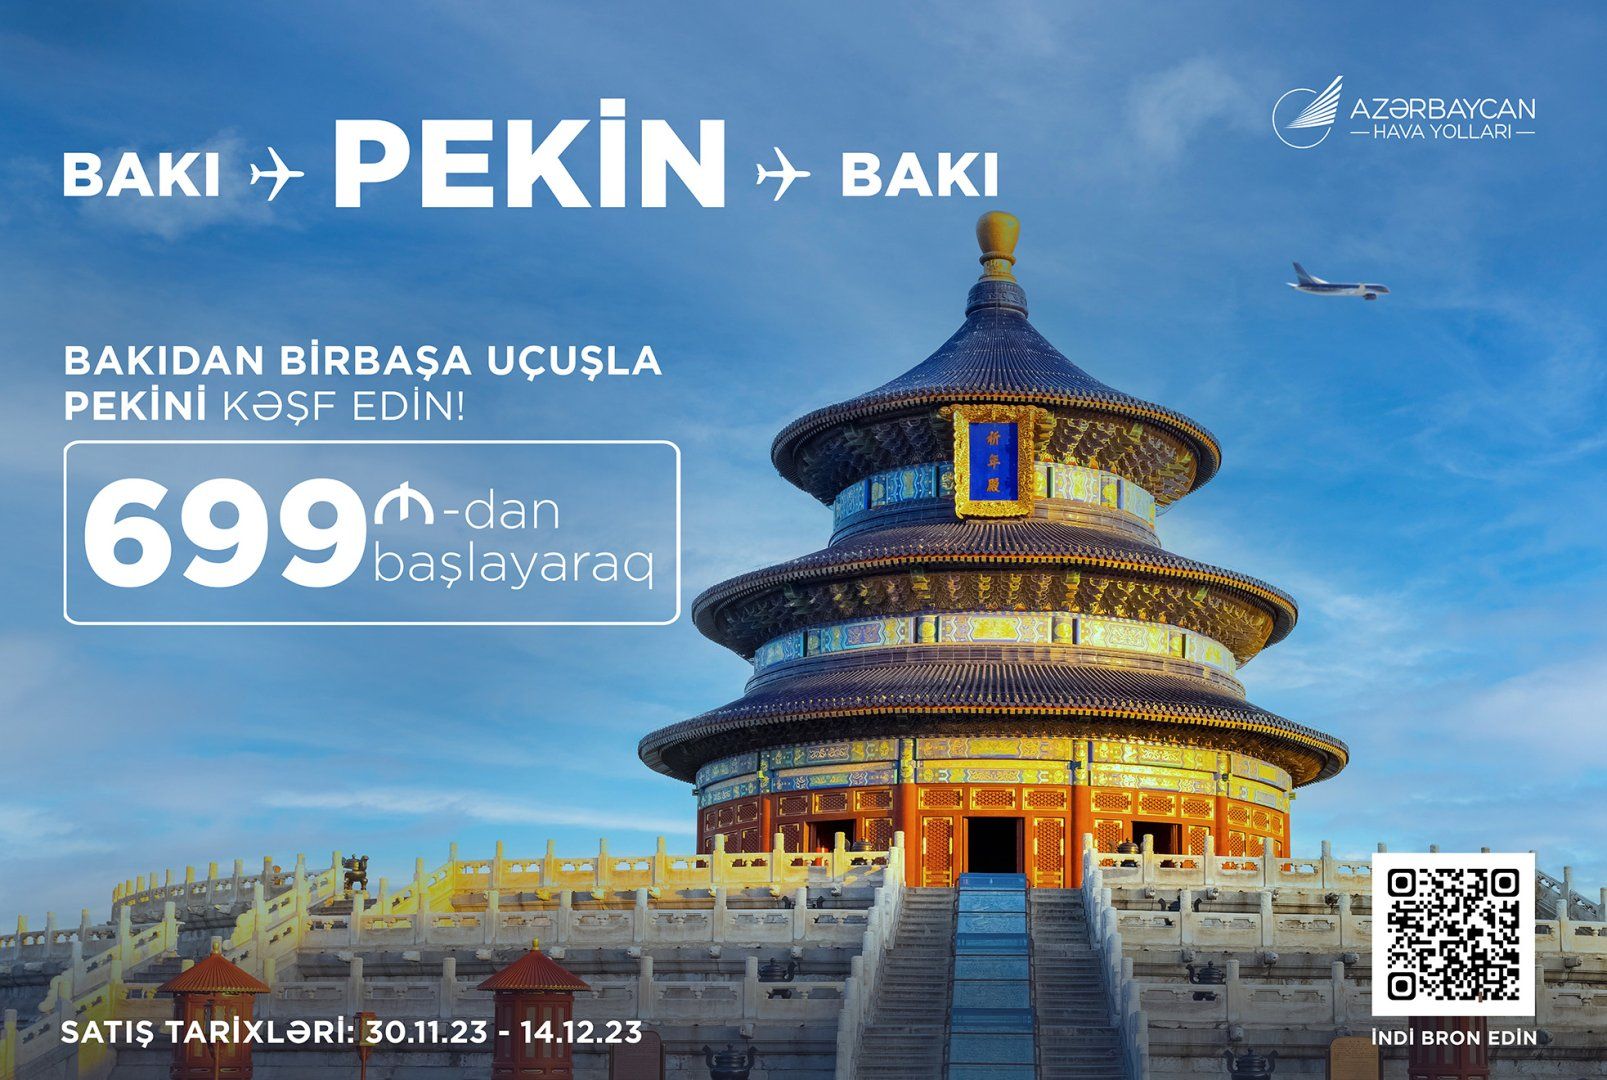 AZAL offers discounts on tickets between Baku and Beijing